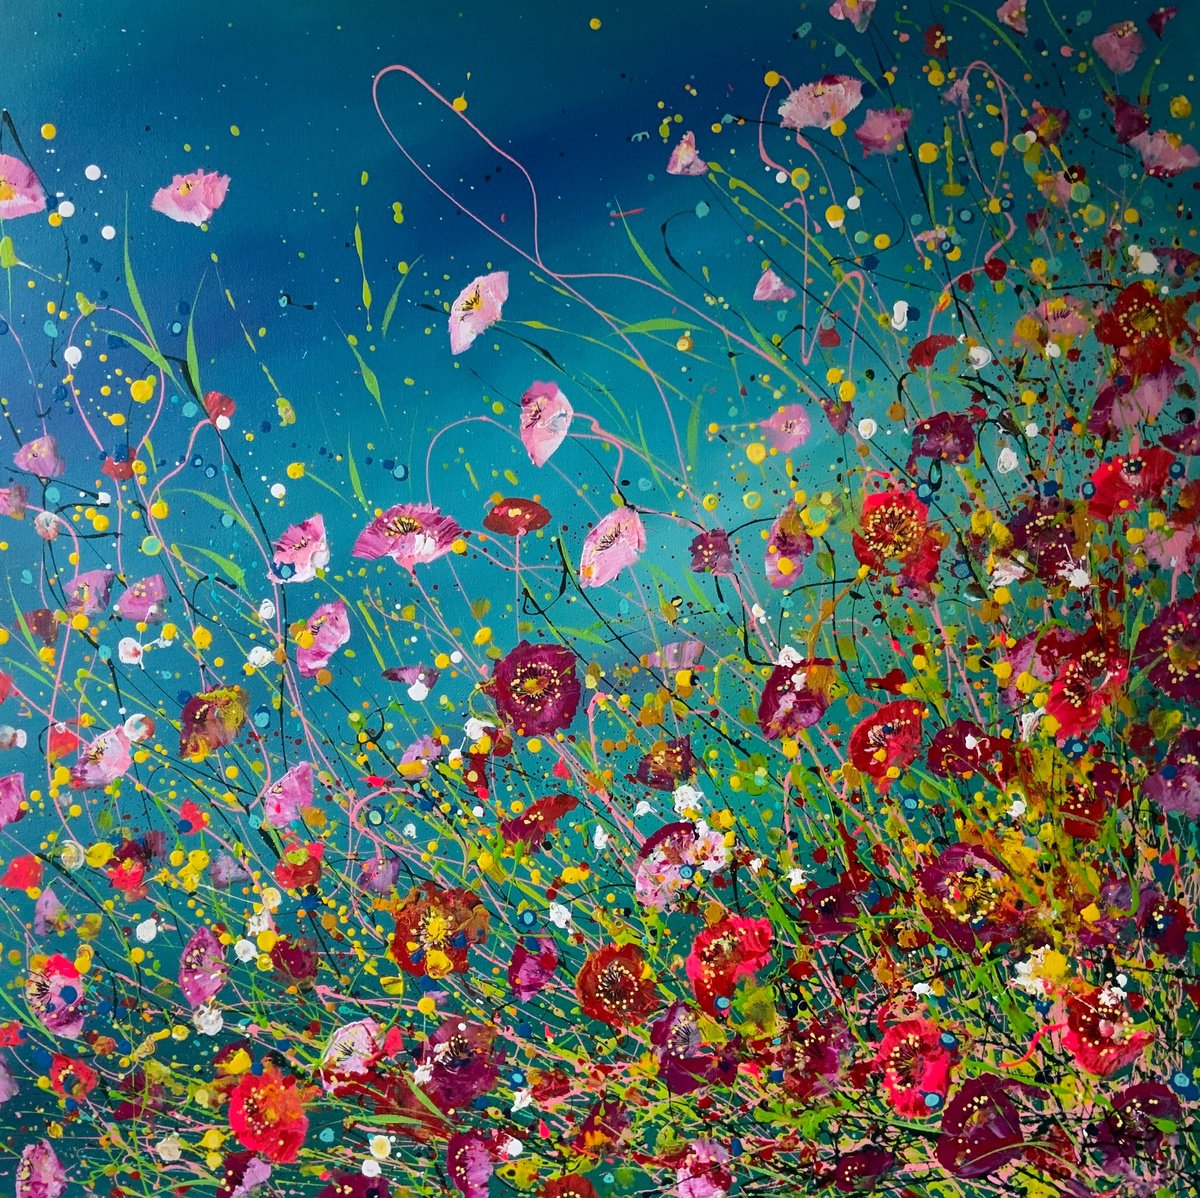 Windswept Flowers by Jan Rogers